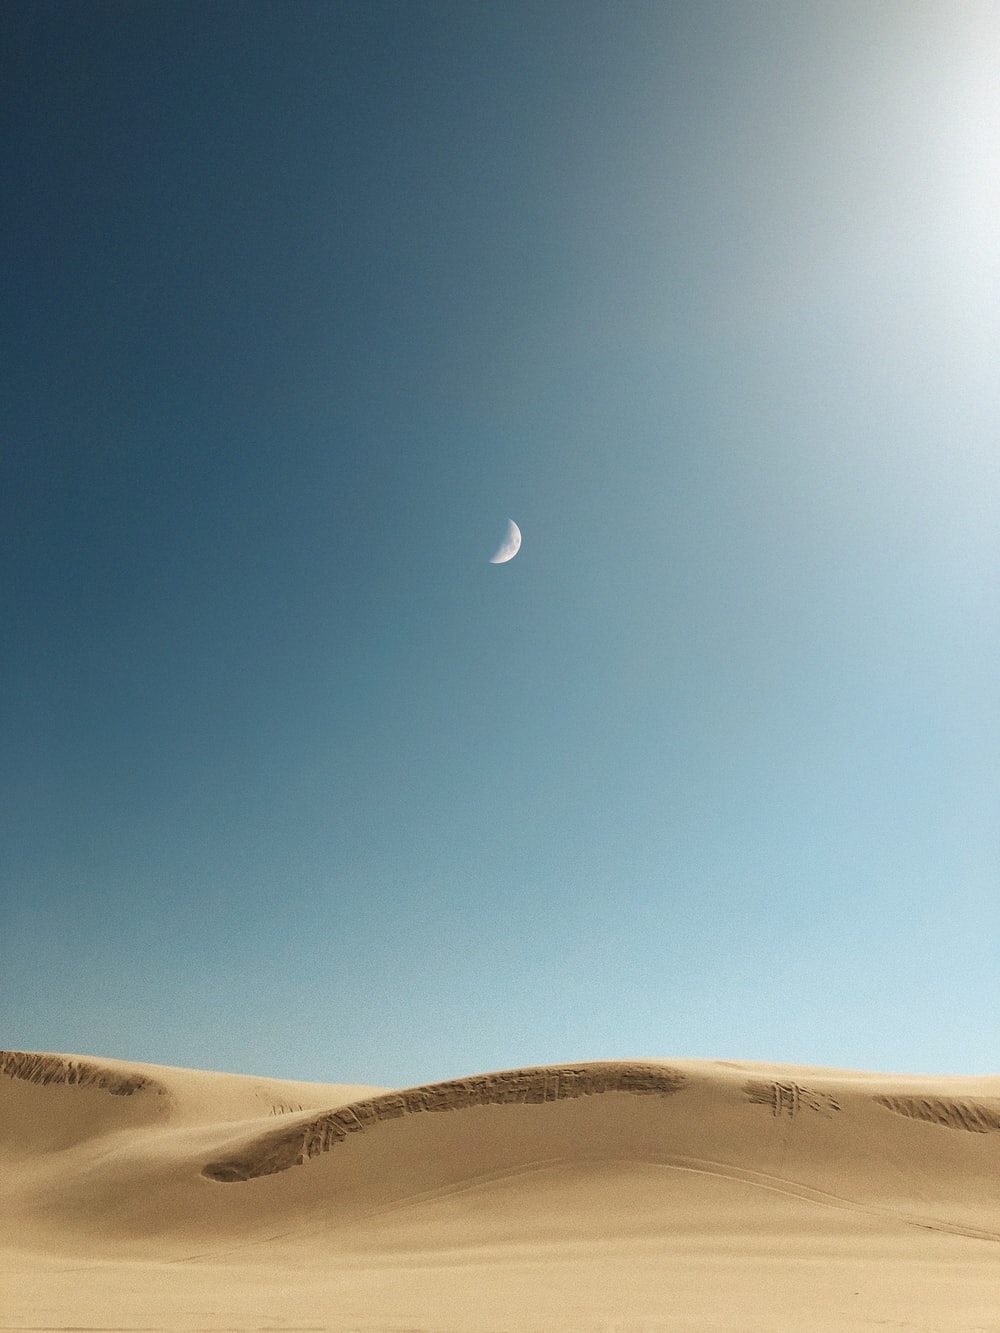 350+ Beautiful Sahara Desert Pictures